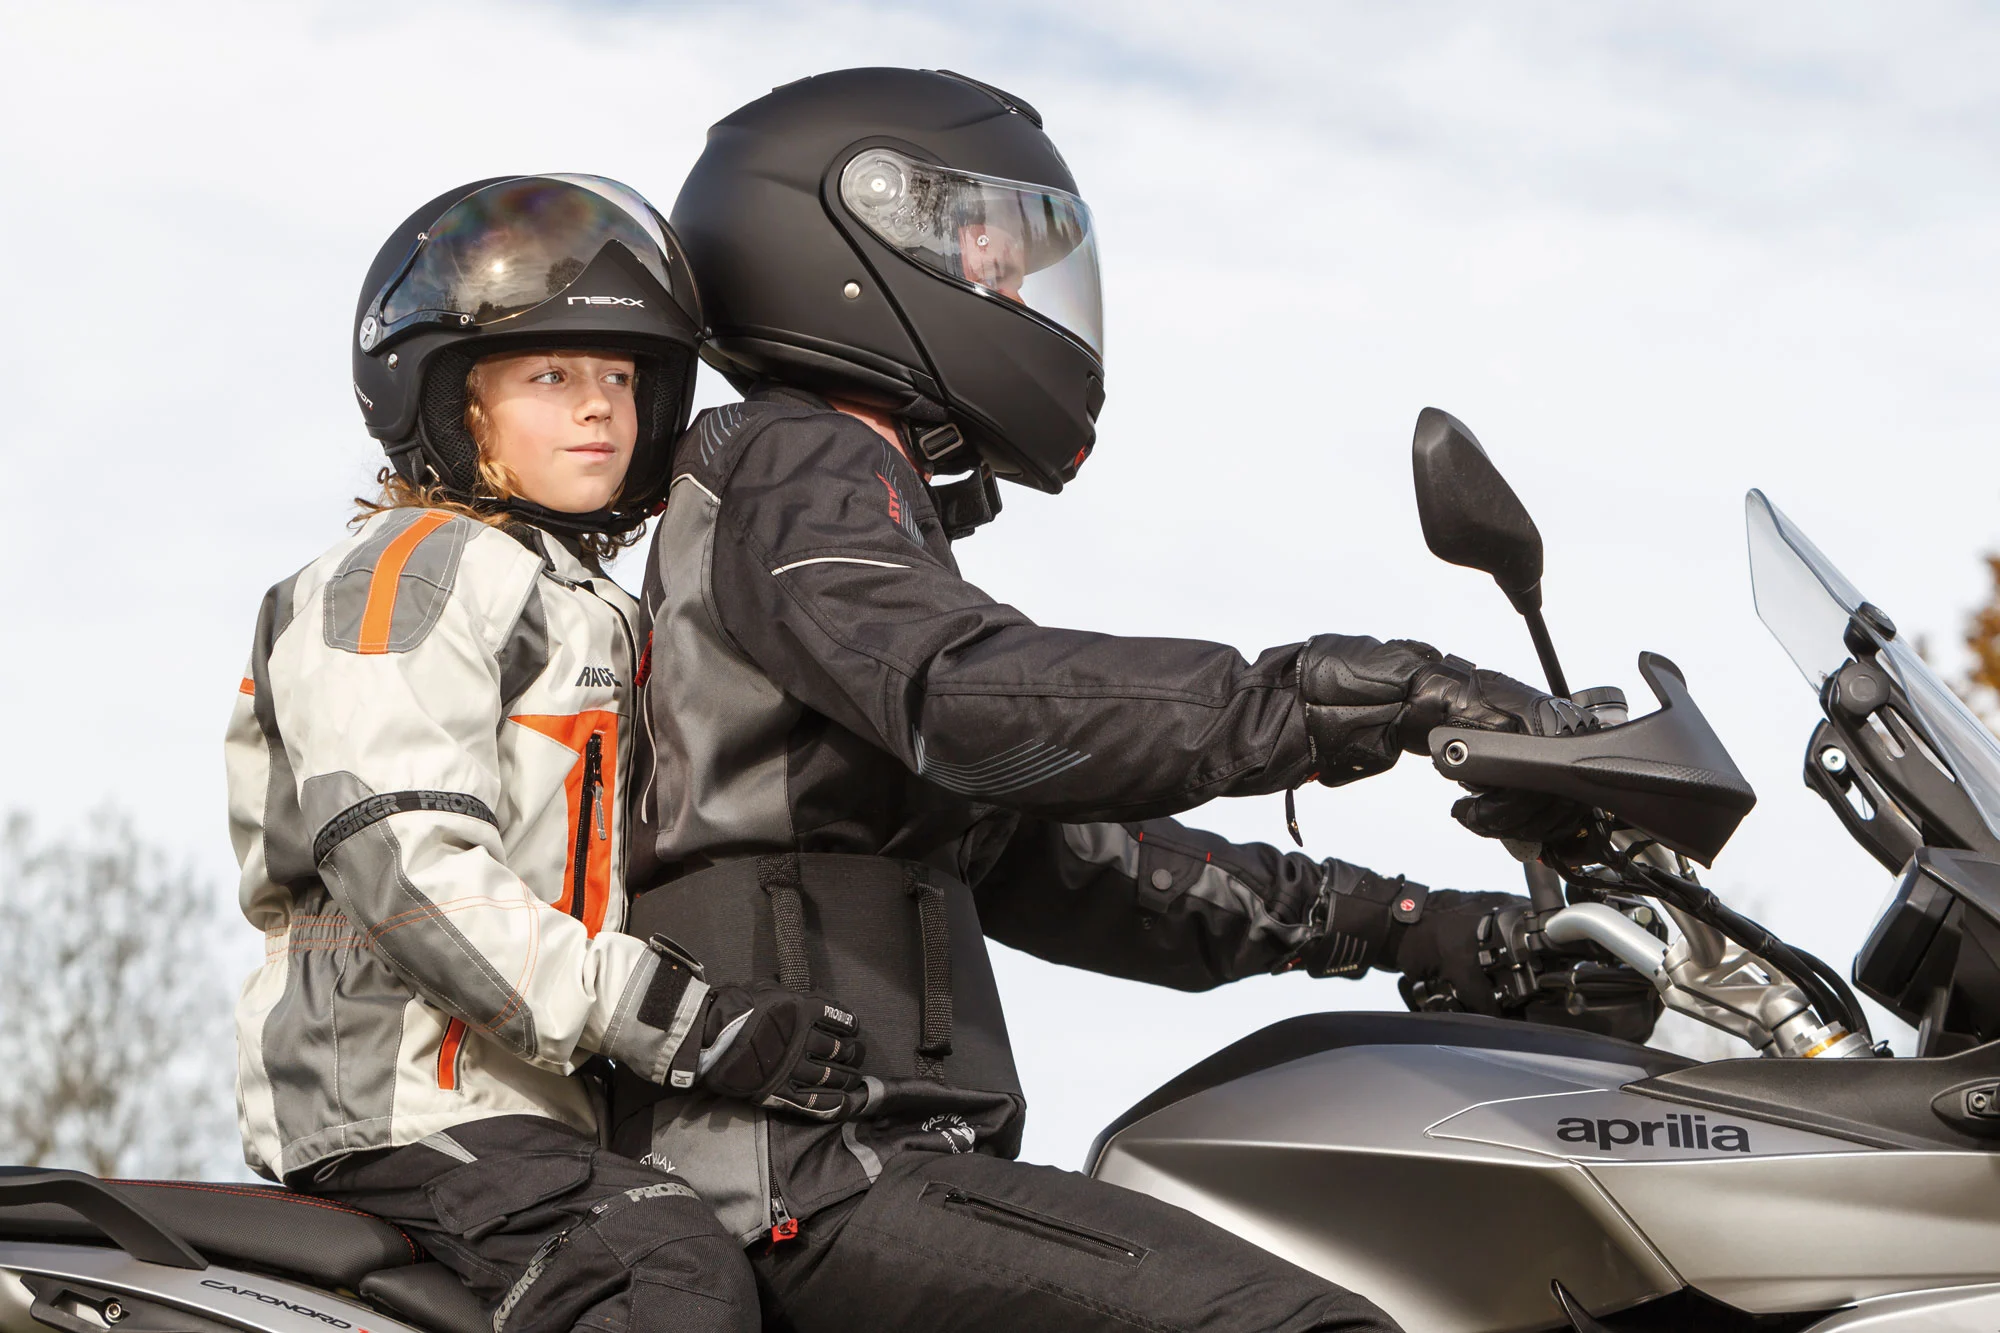 idée cadeau motard - Porte casque spécial votre moto - artisanal